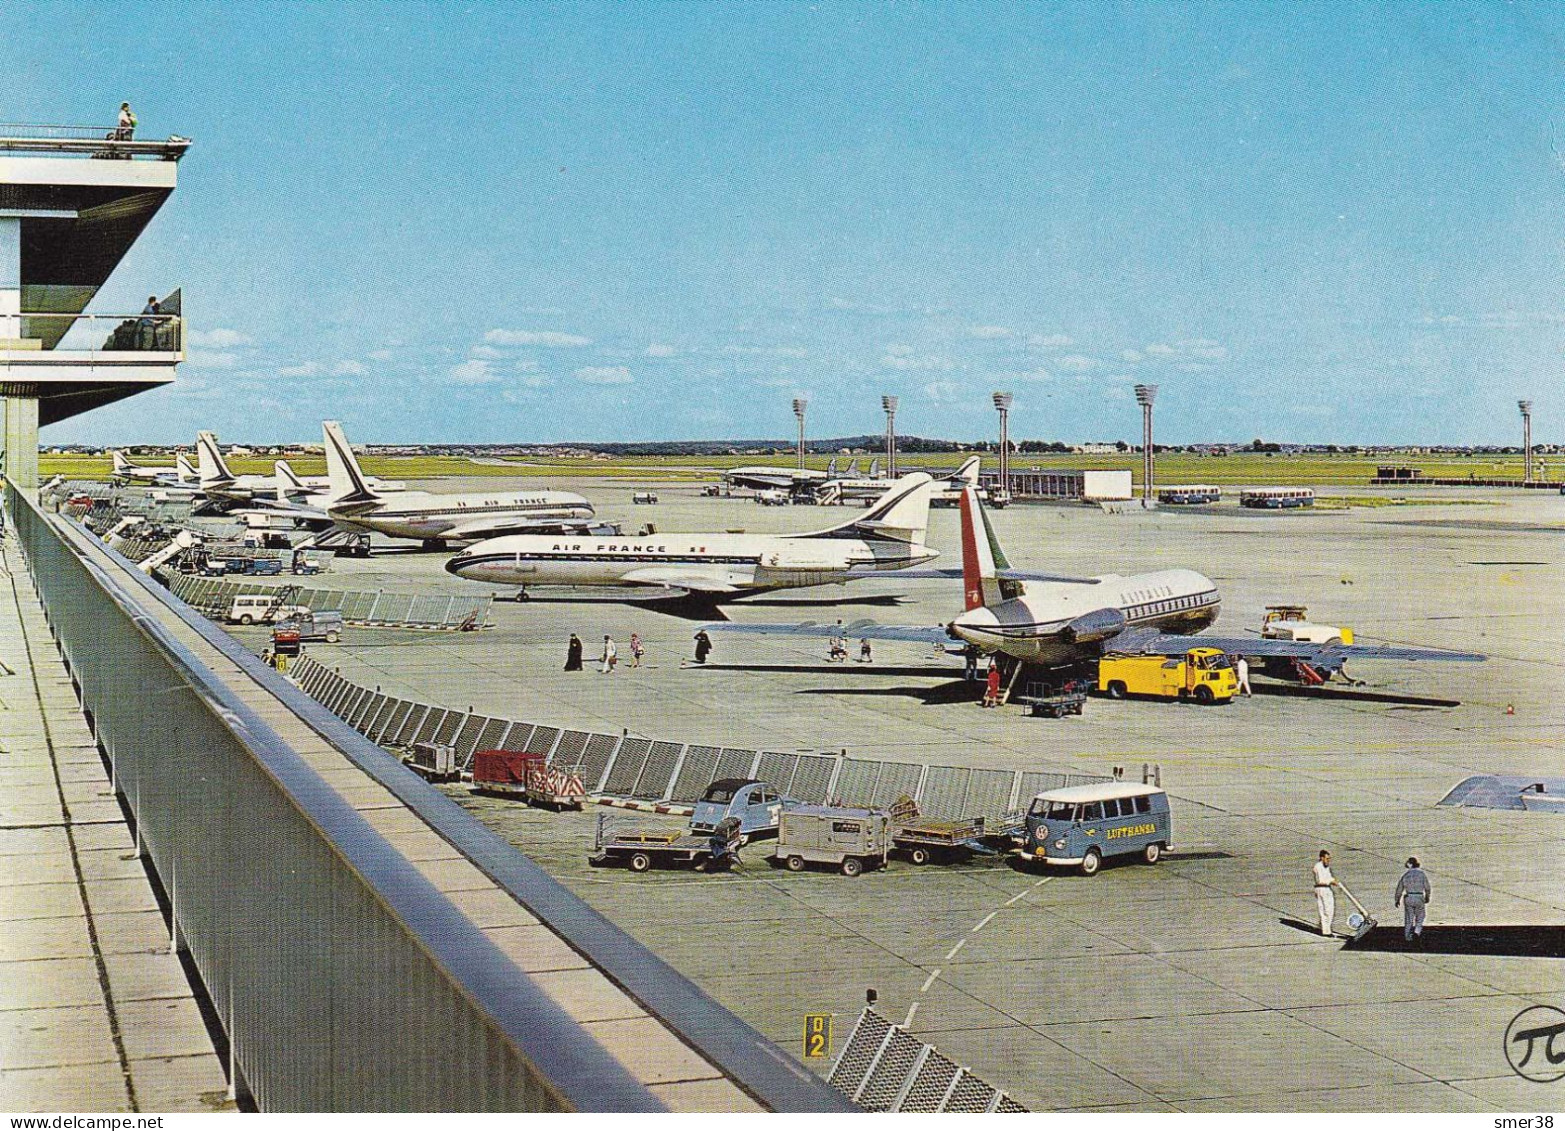 75 - Aeroport De Paris-Orly - L'aire De Stationnement - Aéroports De Paris